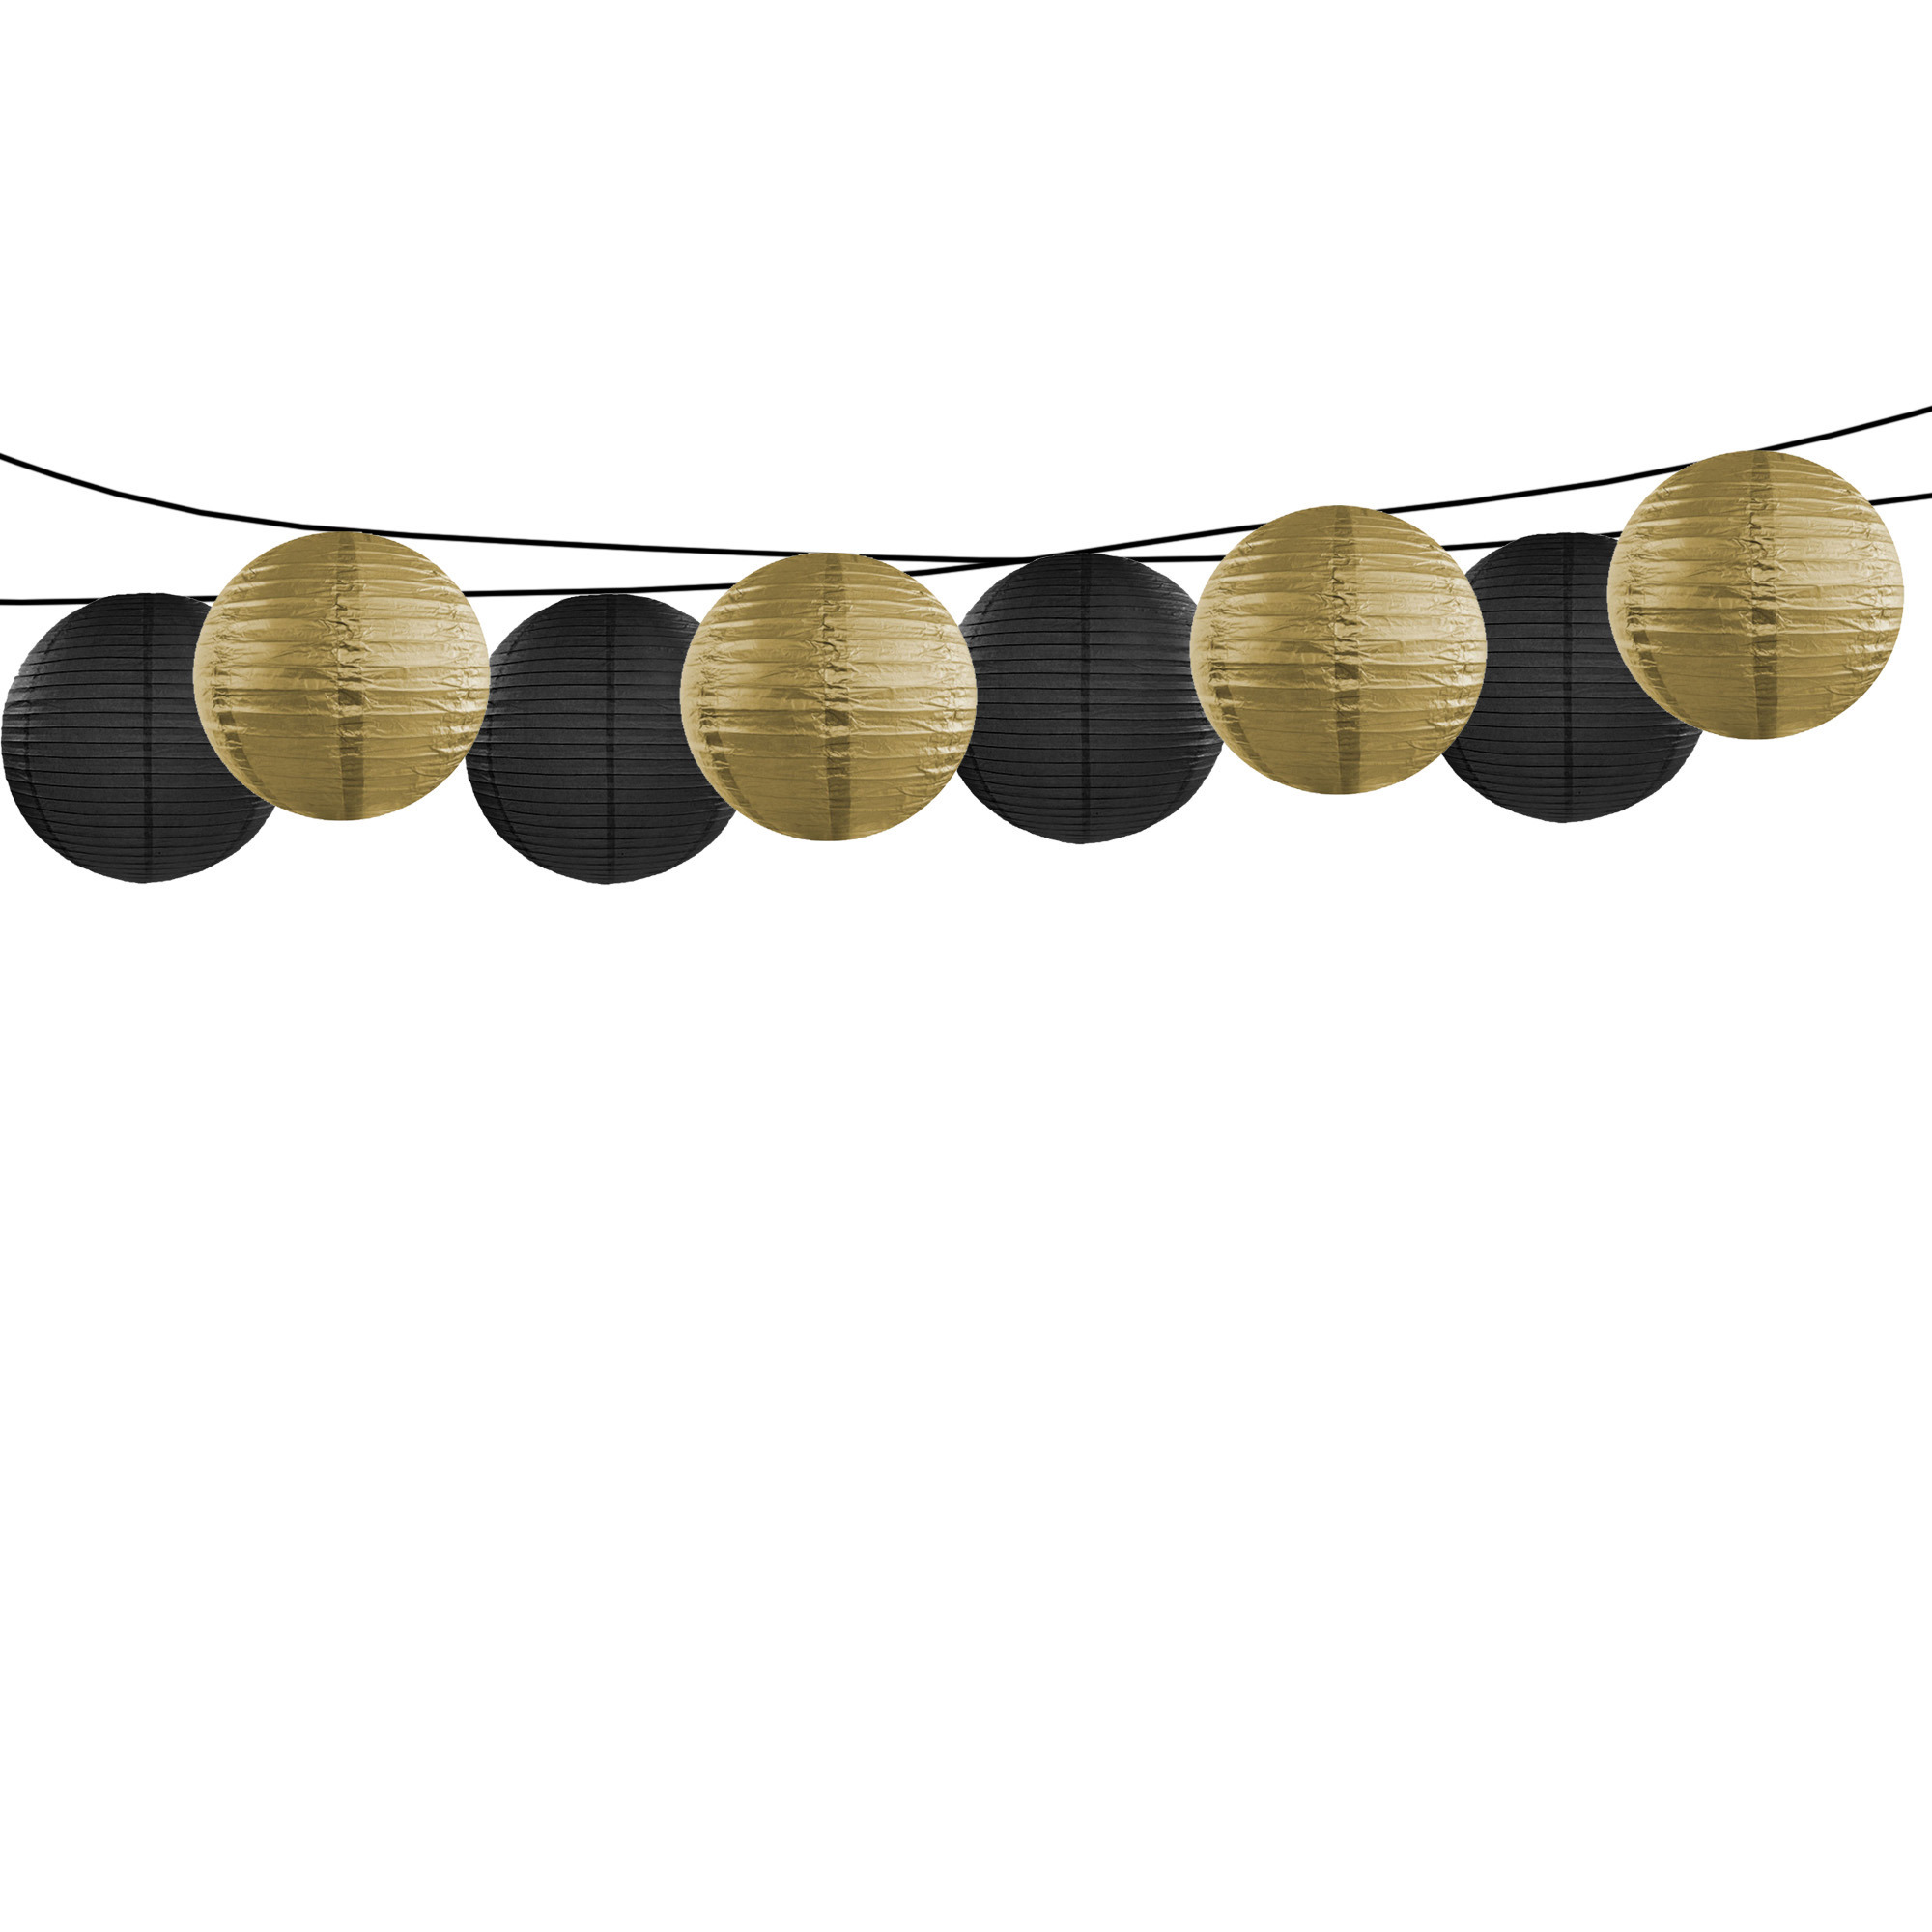 Feest-tuin versiering 8x stuks luxe bol-vorm lampionnen zwart en goud dia 35 cm